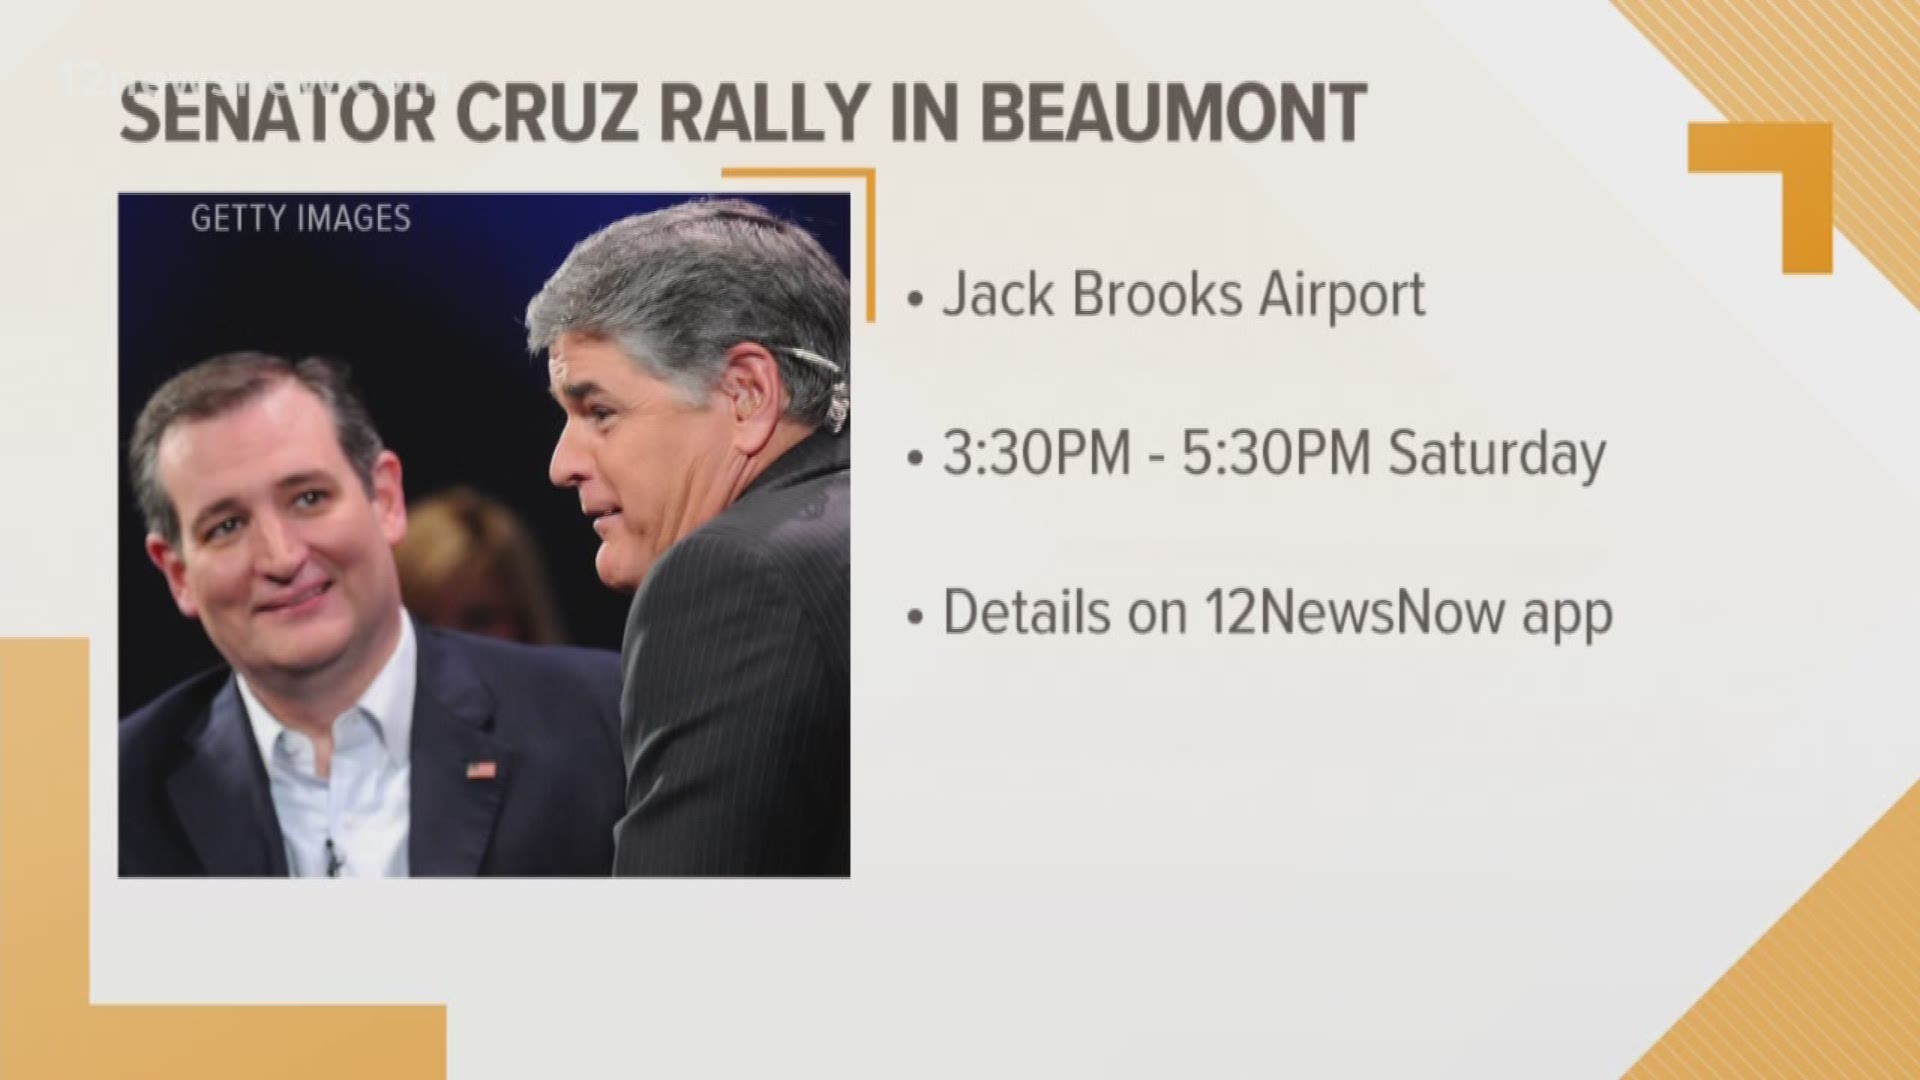 Senator Cruz holds rally this Saturday in Beaumont